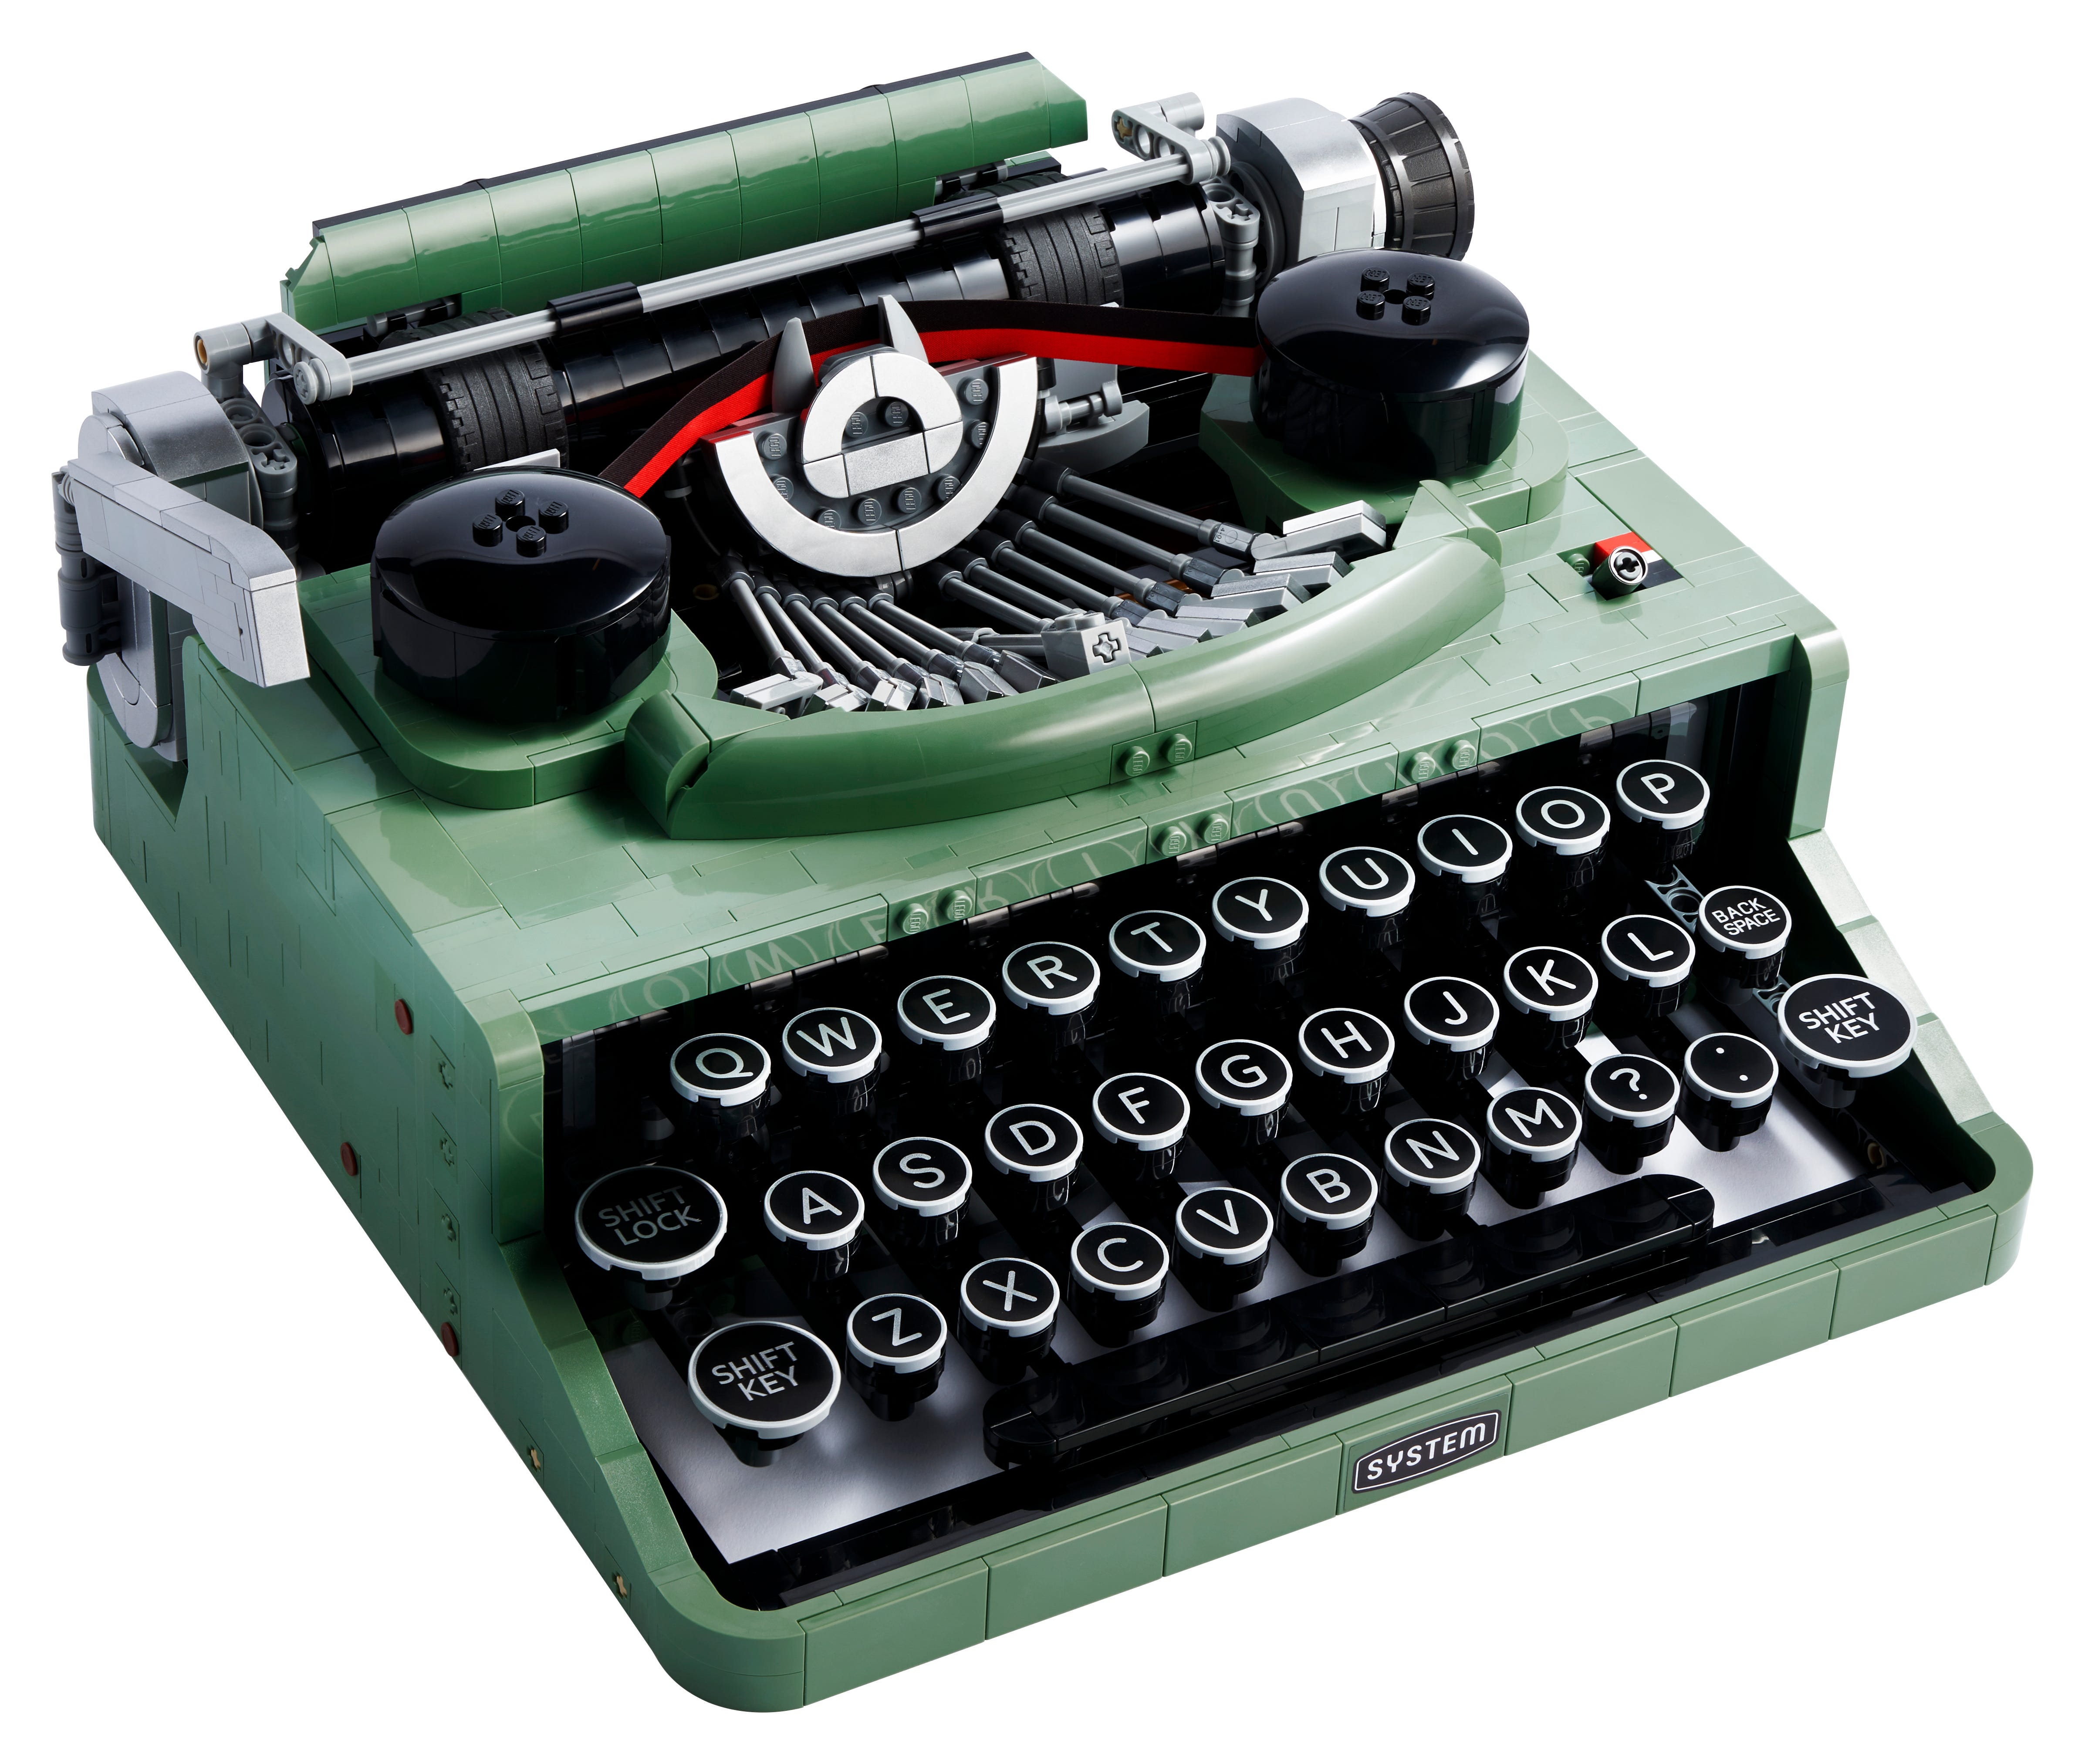 LEGO Vintage Green Typewriter